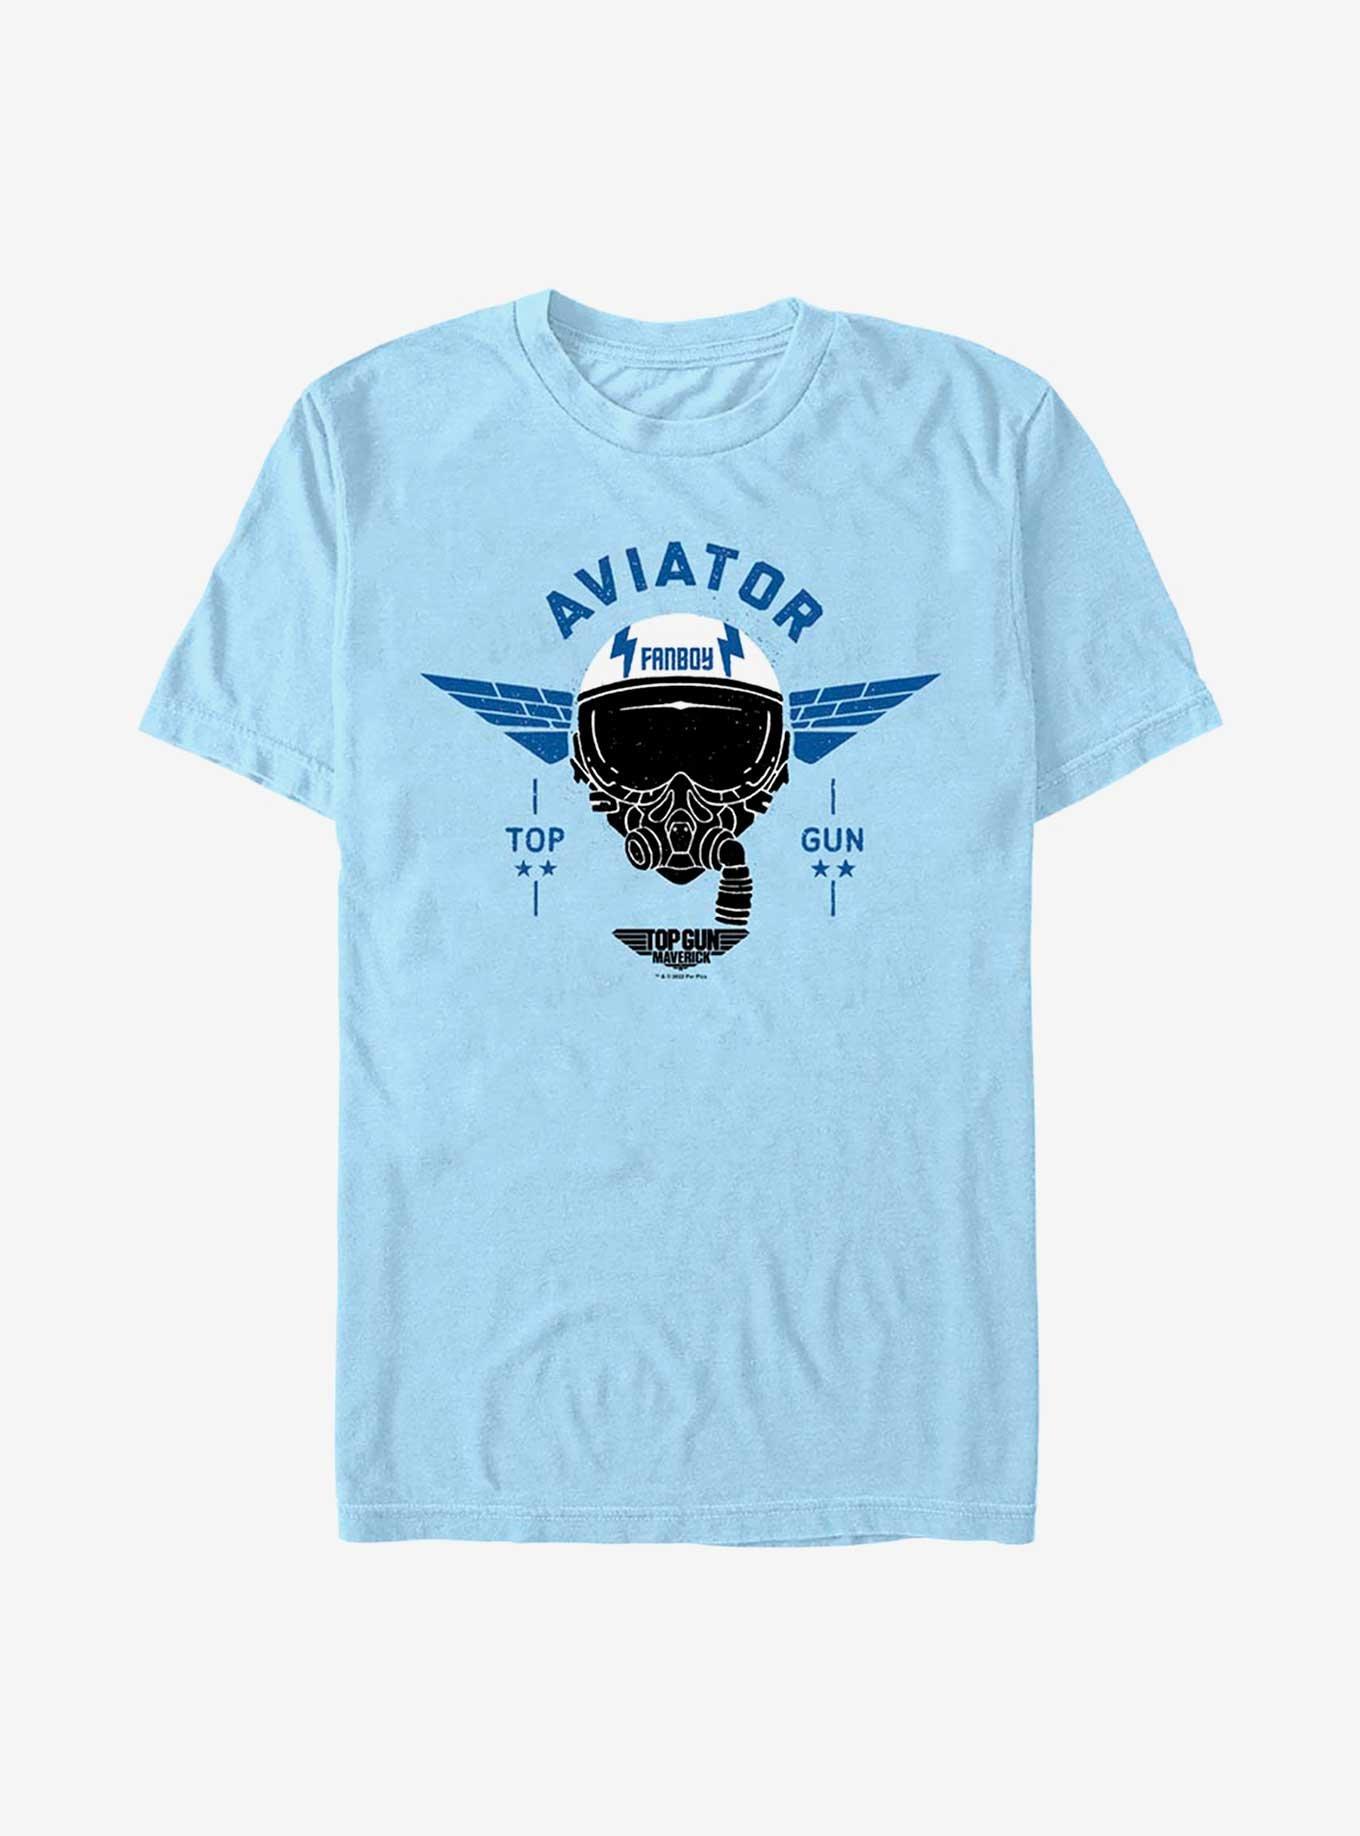 Top Gun Maverick Fanboy Aviator T-Shirt, LT BLUE, hi-res